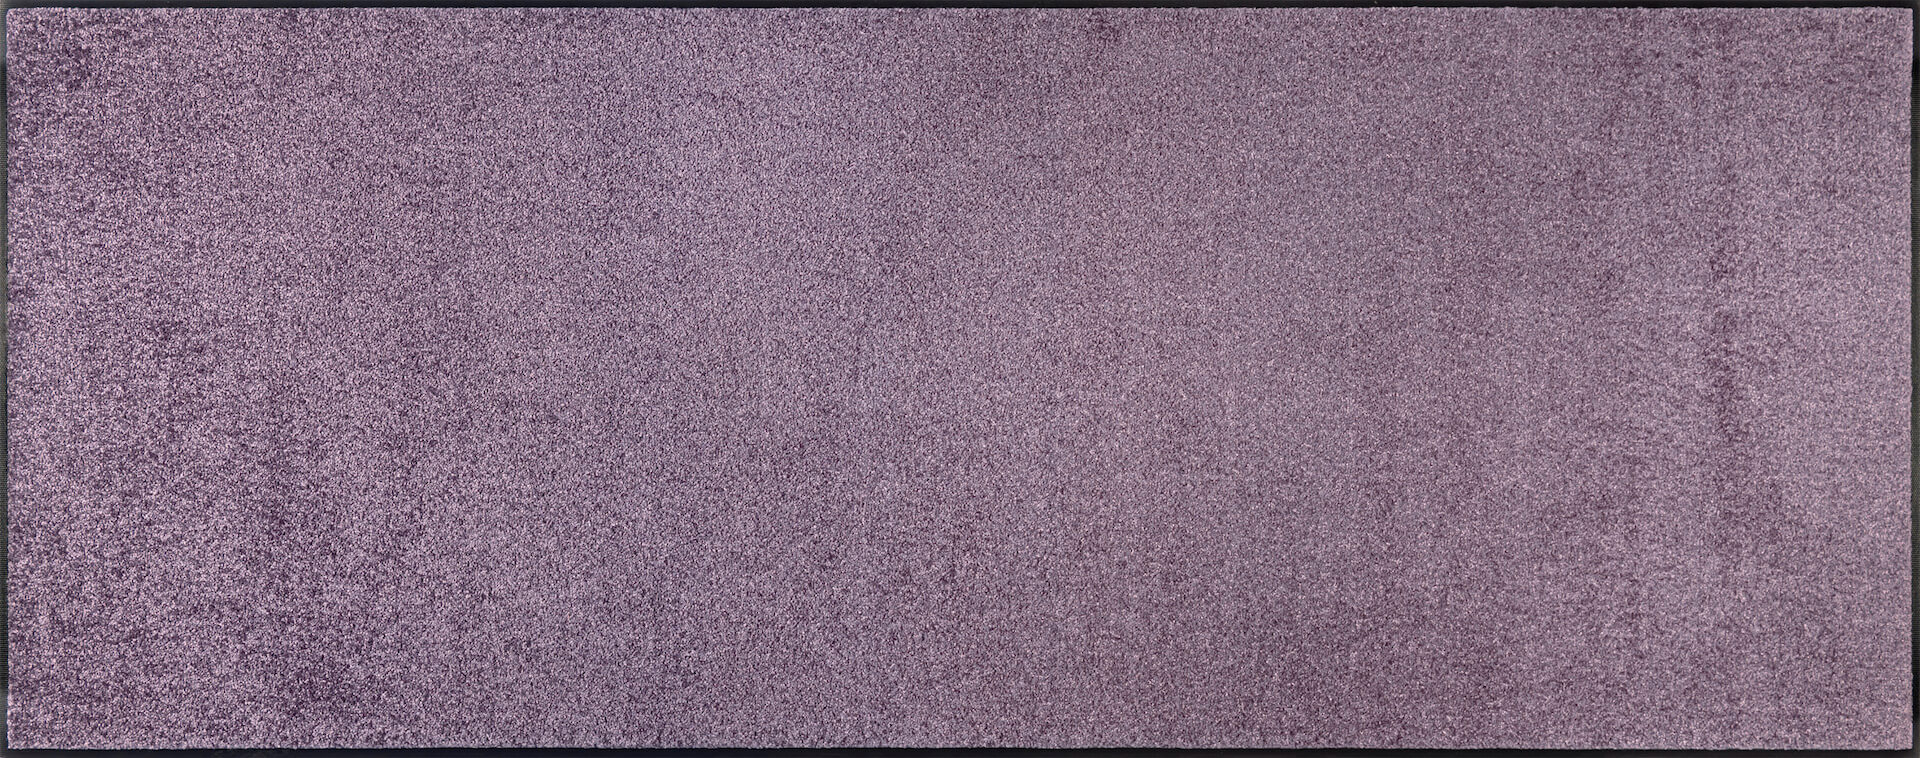 Fußmatte uni TC_Lavender Mist, Wash & Dry Trend Colour, 075 x 190 cm, Draufsicht